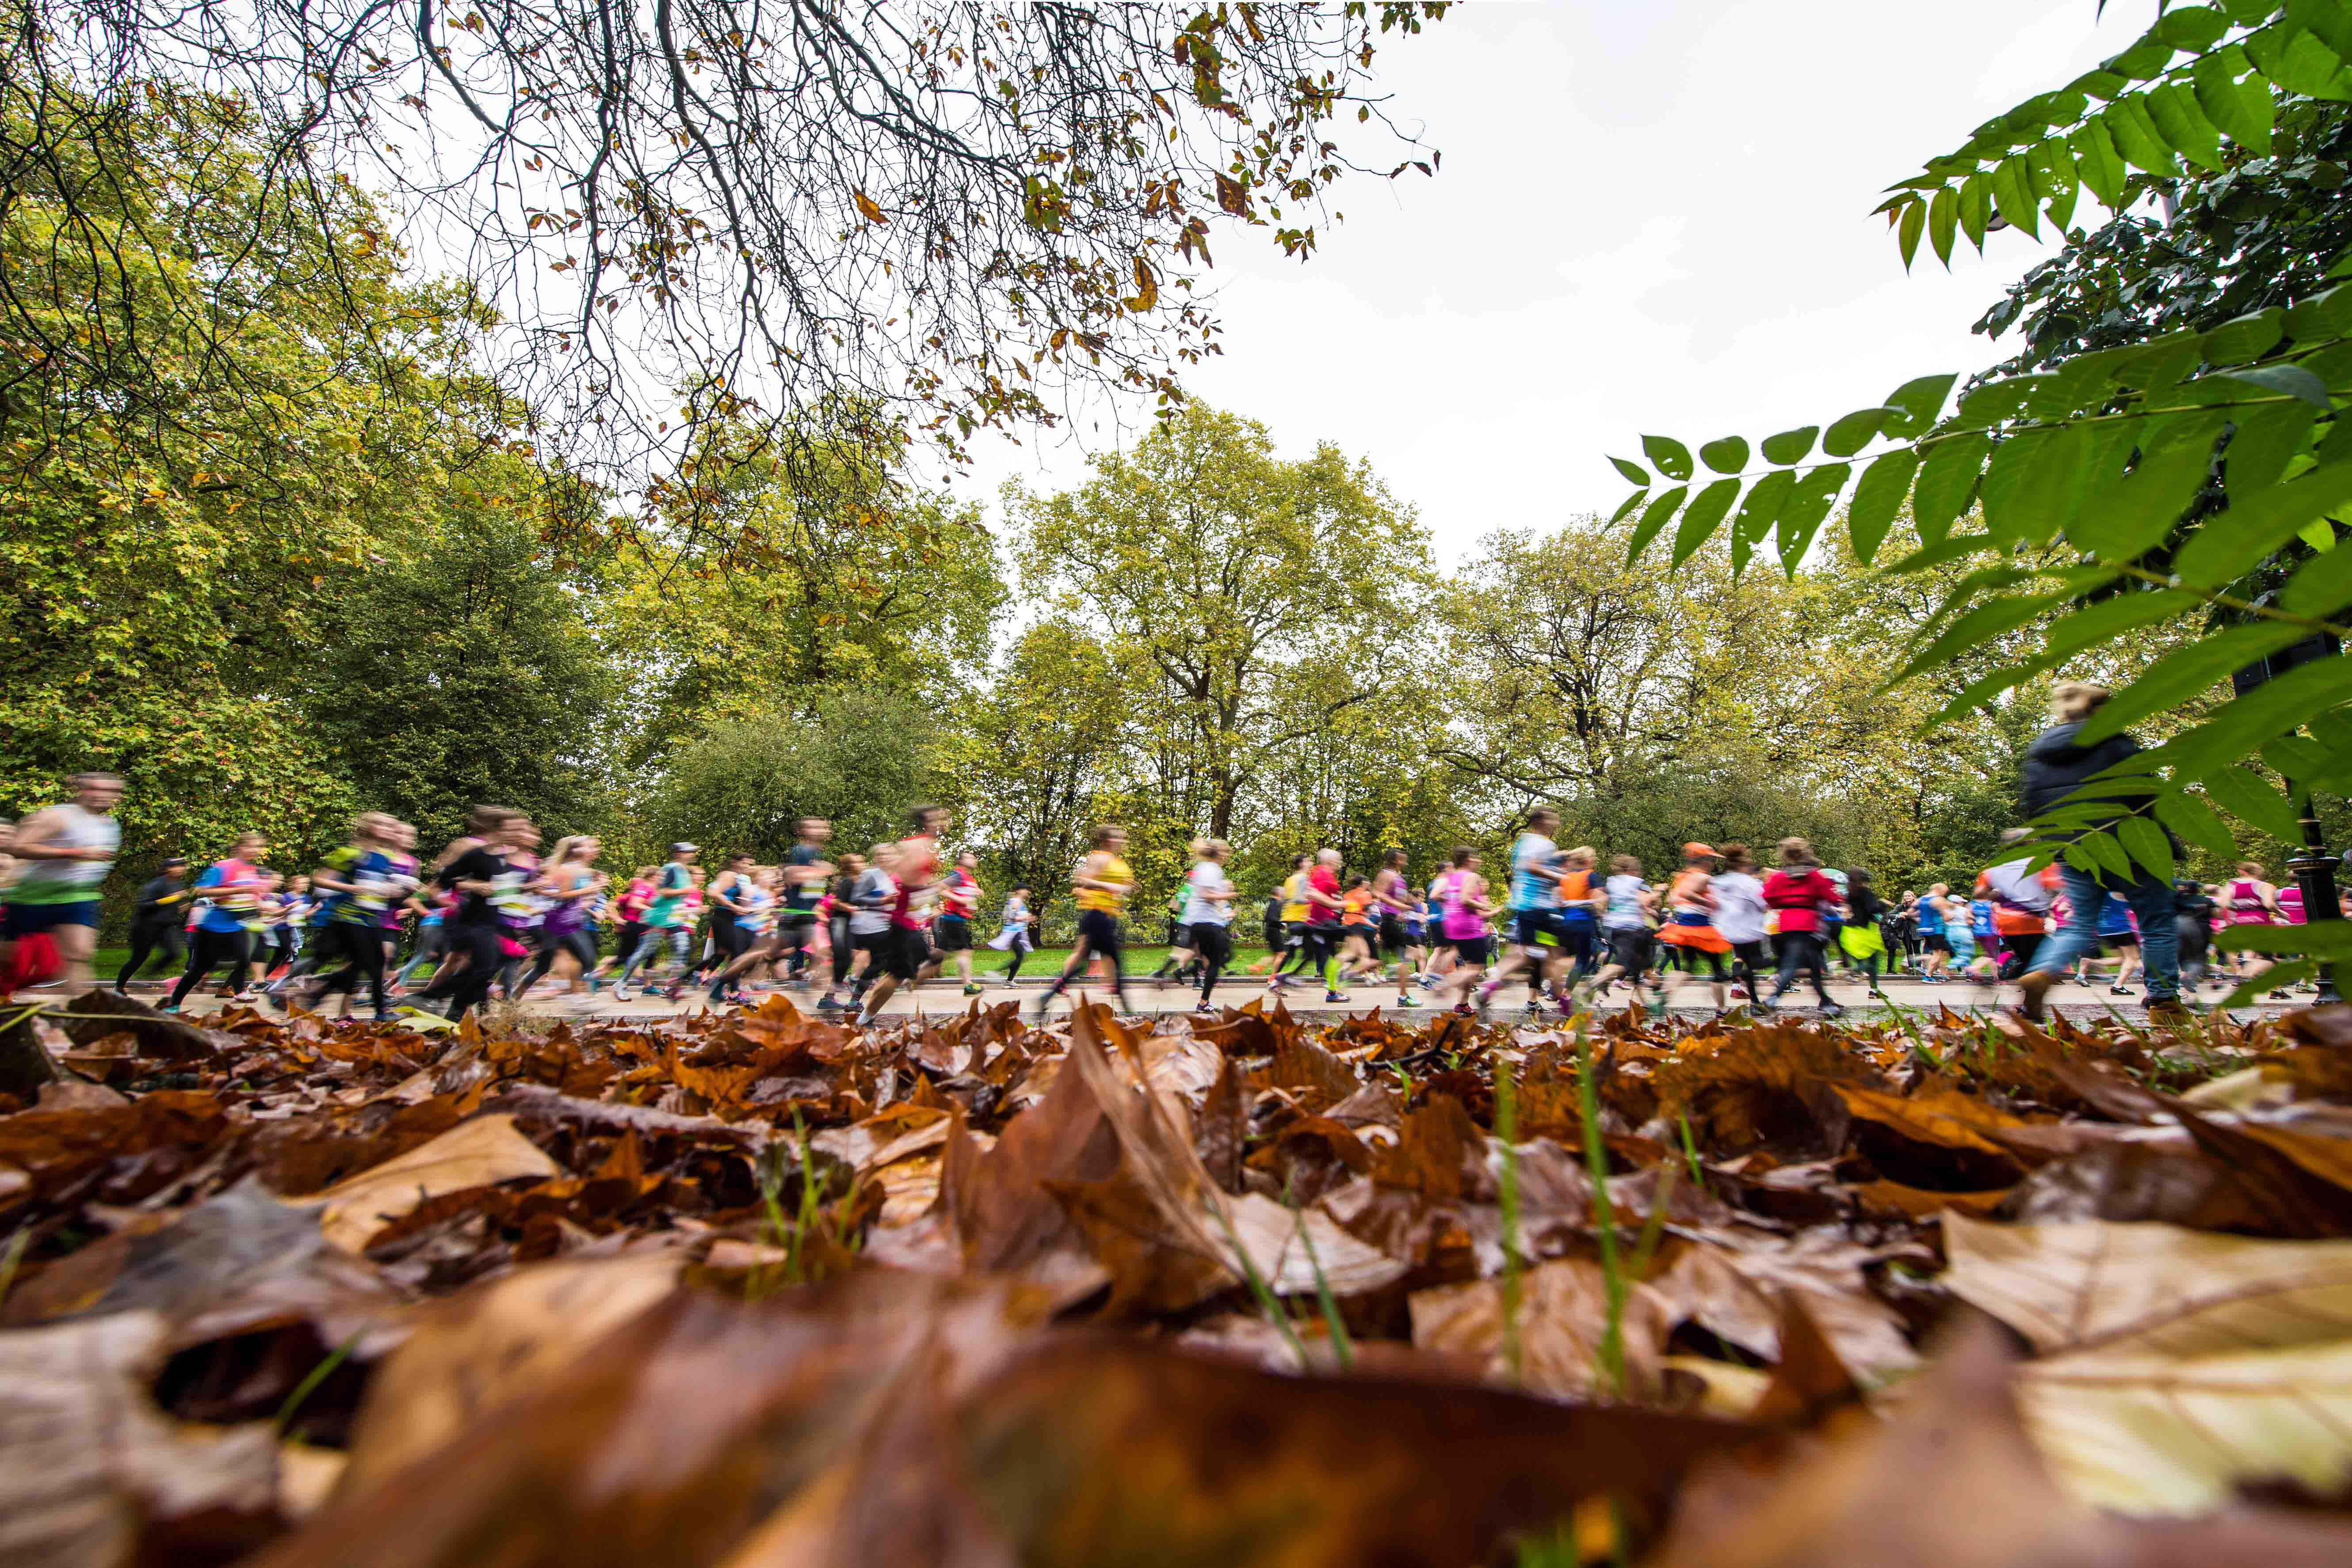 The Royal Parks Half Marathon